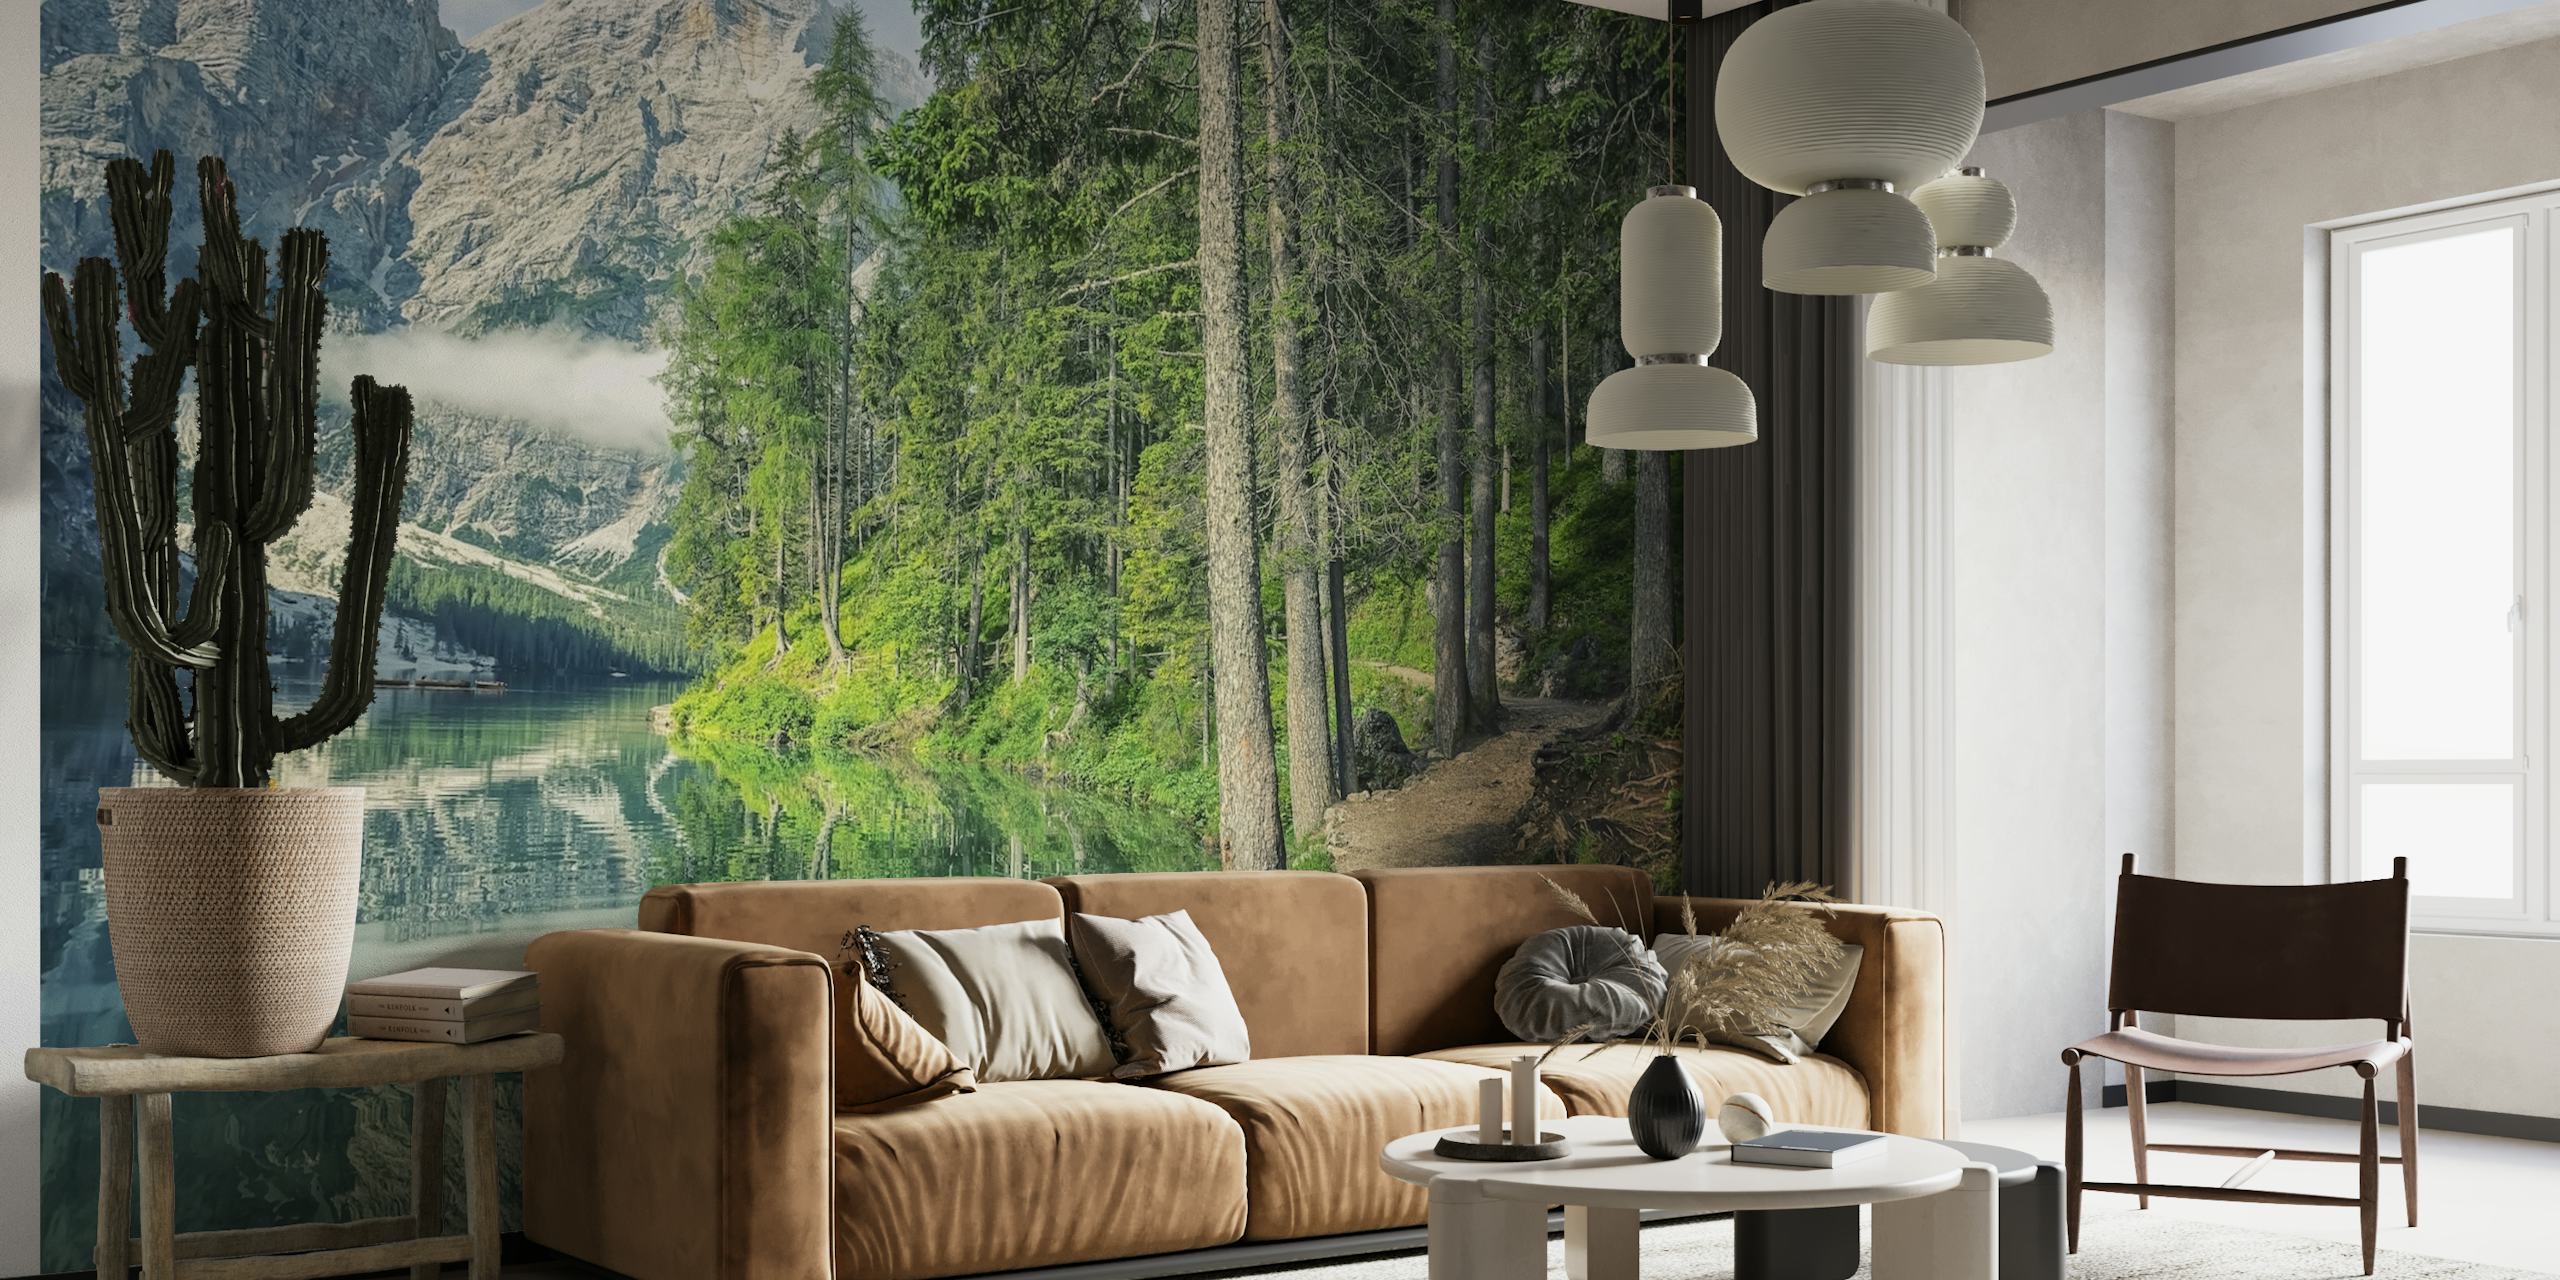 Fotomural de pared con un paisaje tranquilo de un lago con un sendero forestal que conduce hacia las montañas.